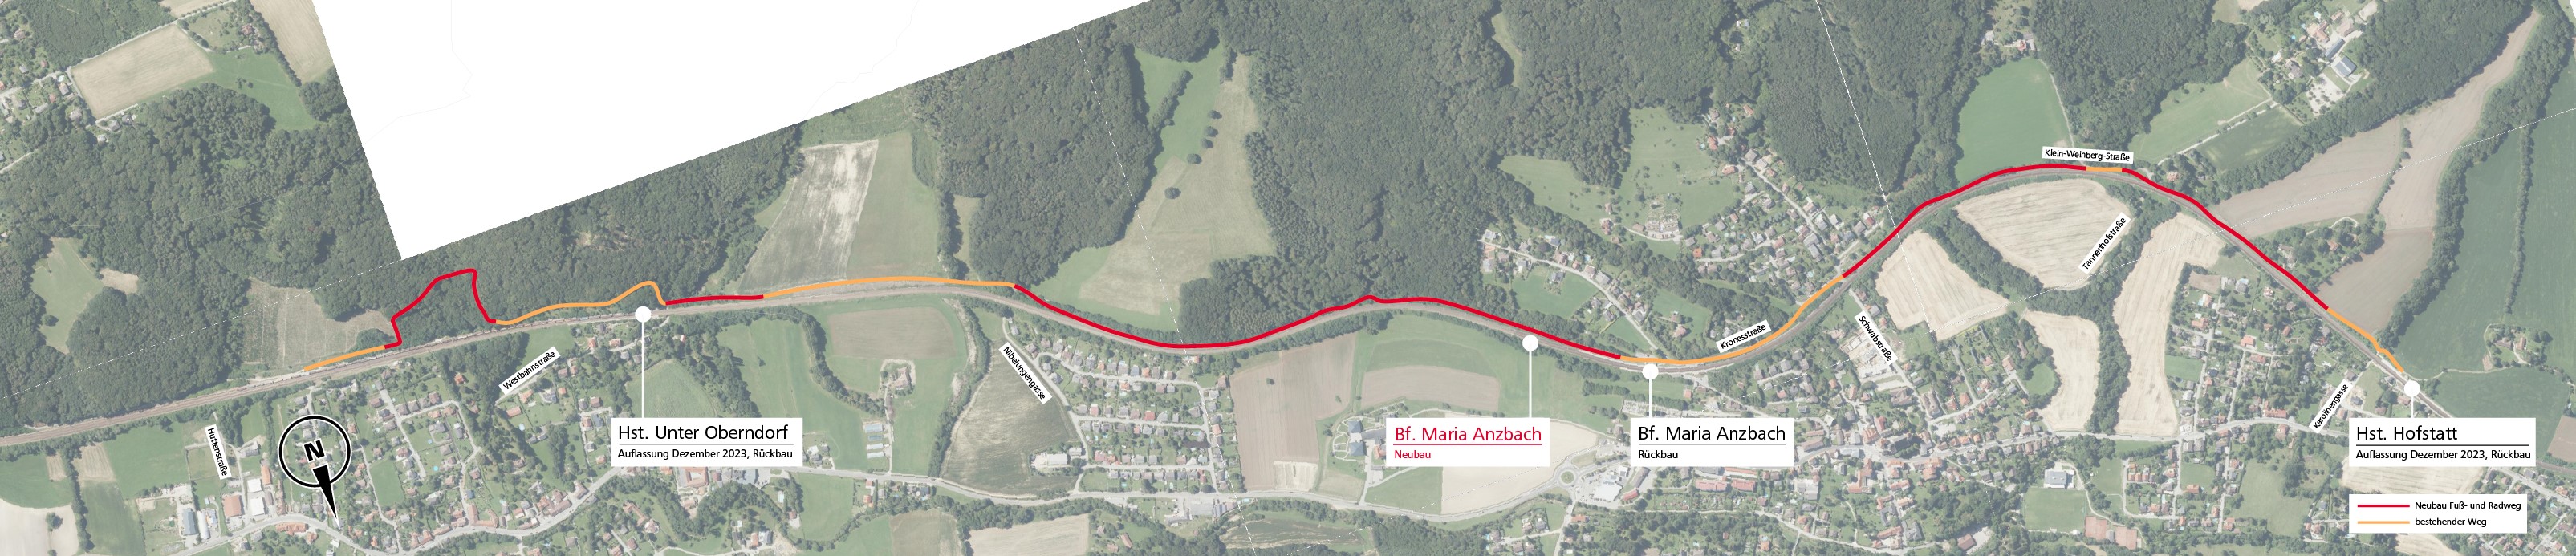 Arbeiten für Geh- und Radweg entlang der Bahn in Maria Anzbach gestartet